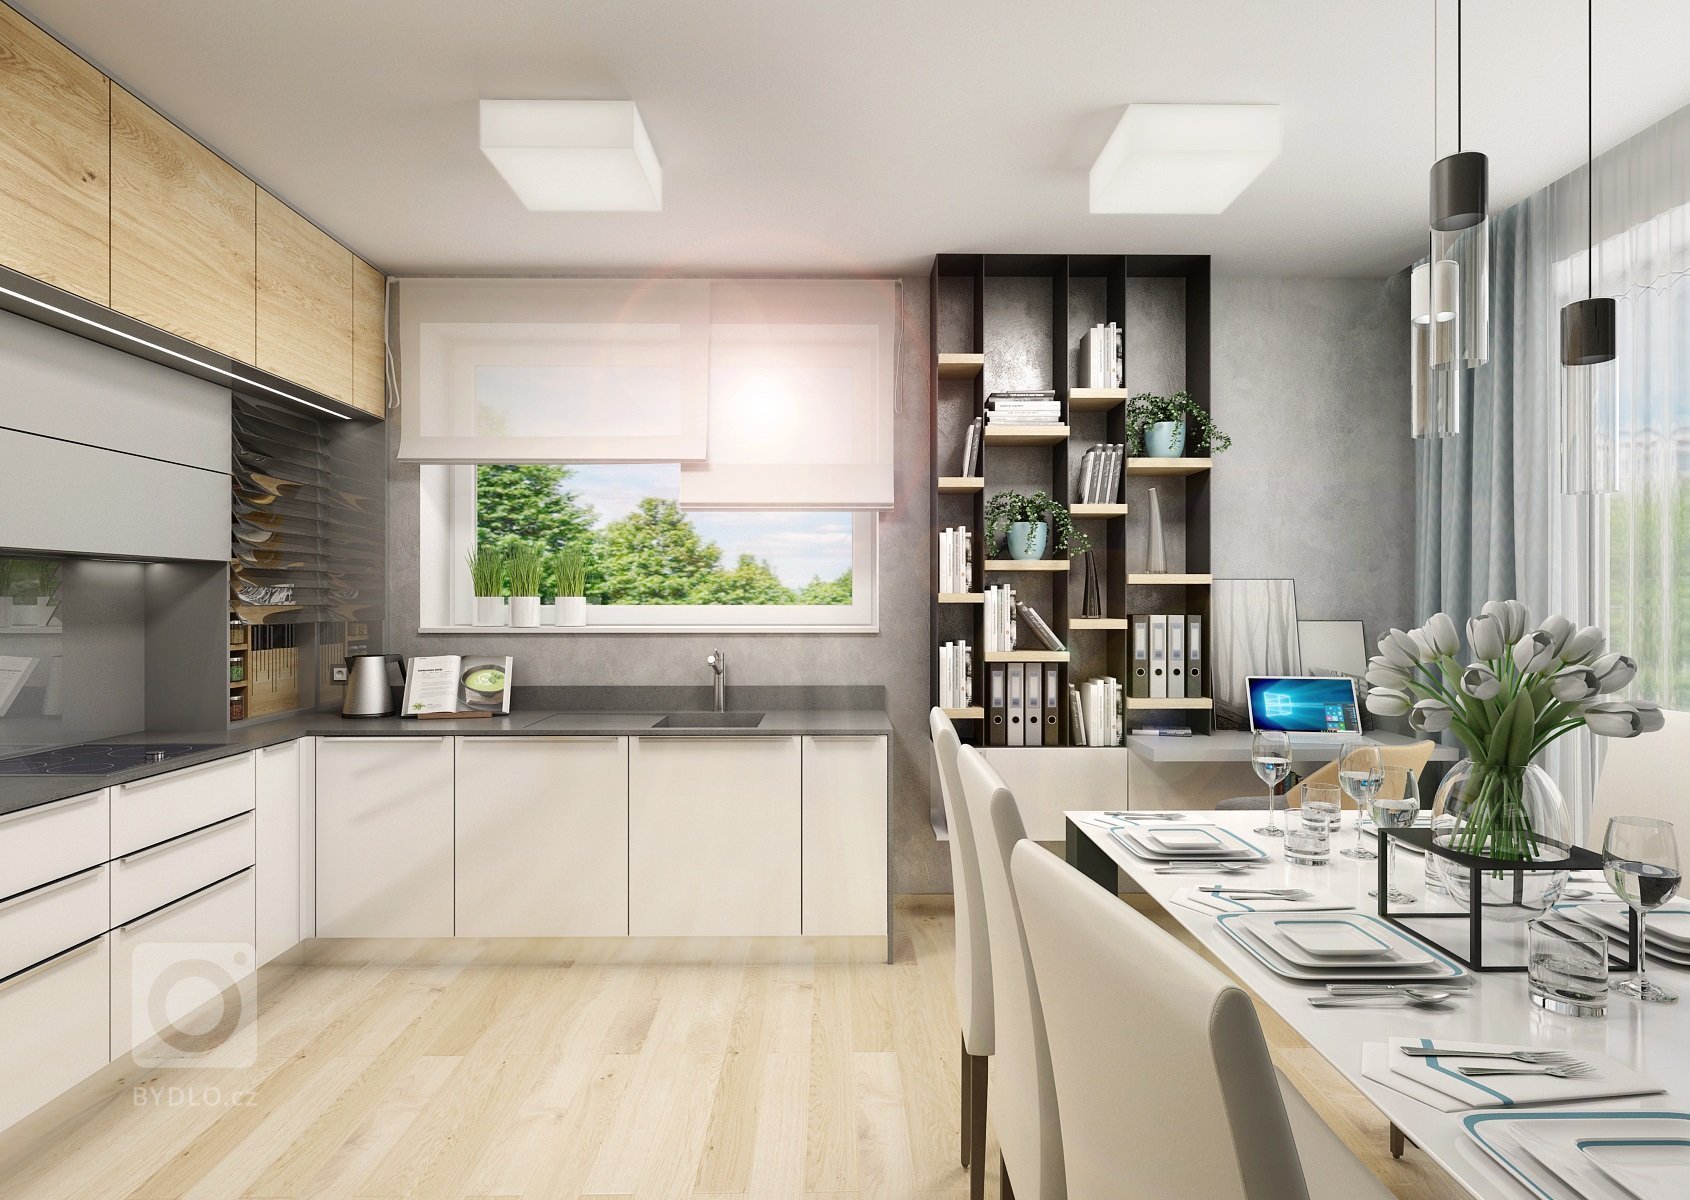 Návrh třípokojového bytu s&nbsp;kuchyní je ve světlých odstínech šedé a přírodního dubu s&nbsp;bílou. V&nbsp;kontrastu se objevuje barva antracitová např.…